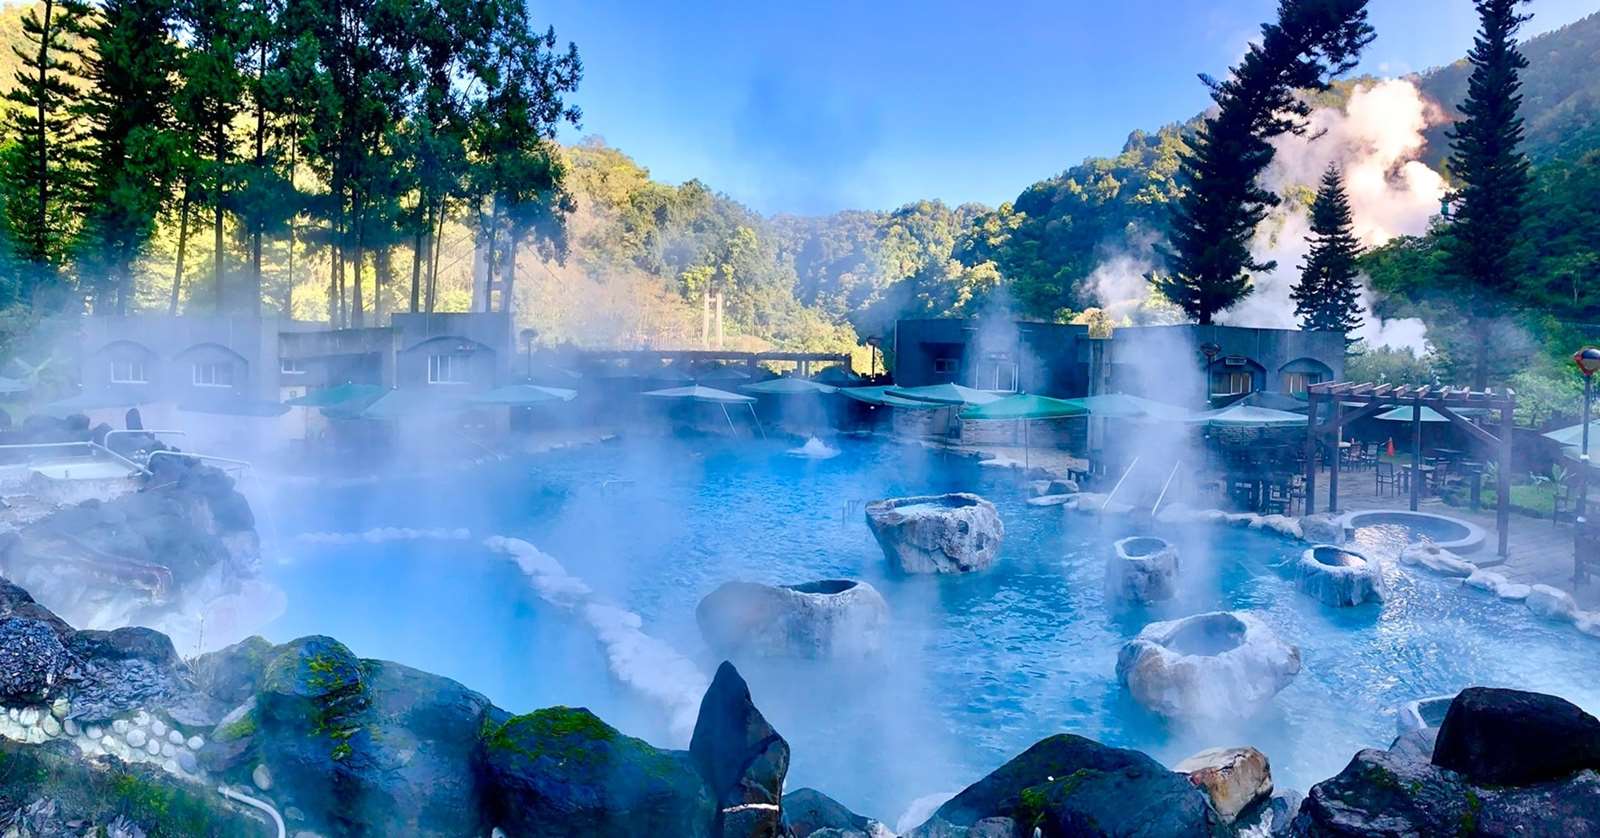 太平山國家森林遊樂區鳩之澤溫泉